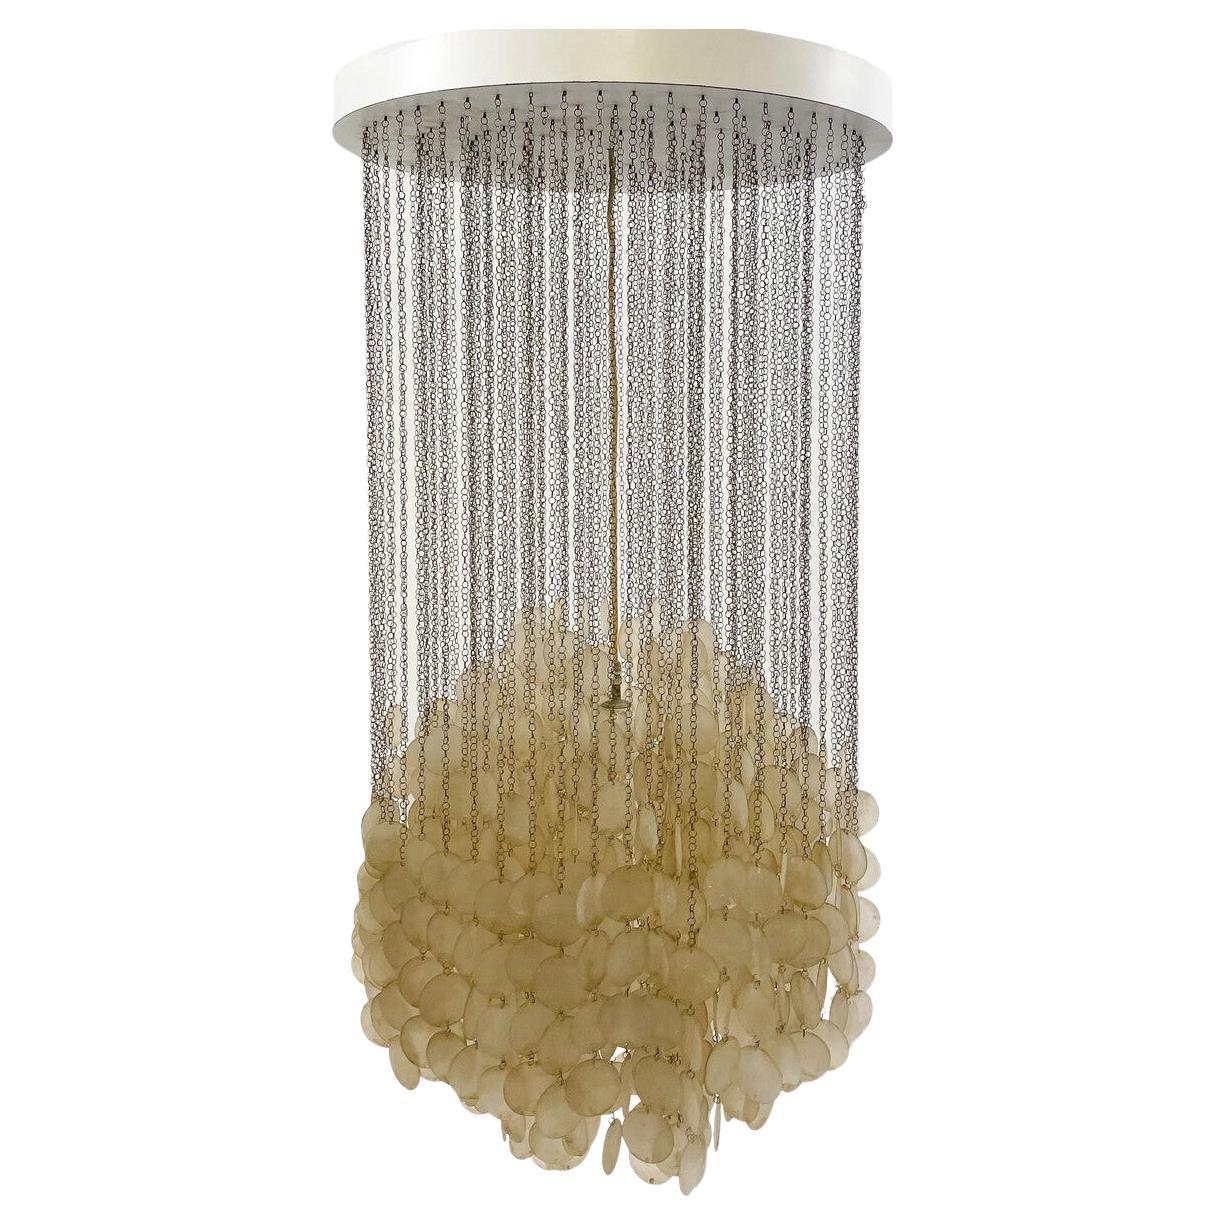 Fun 3DM Seashell Pendant Light by Verner Panton, Denmark, 1960s